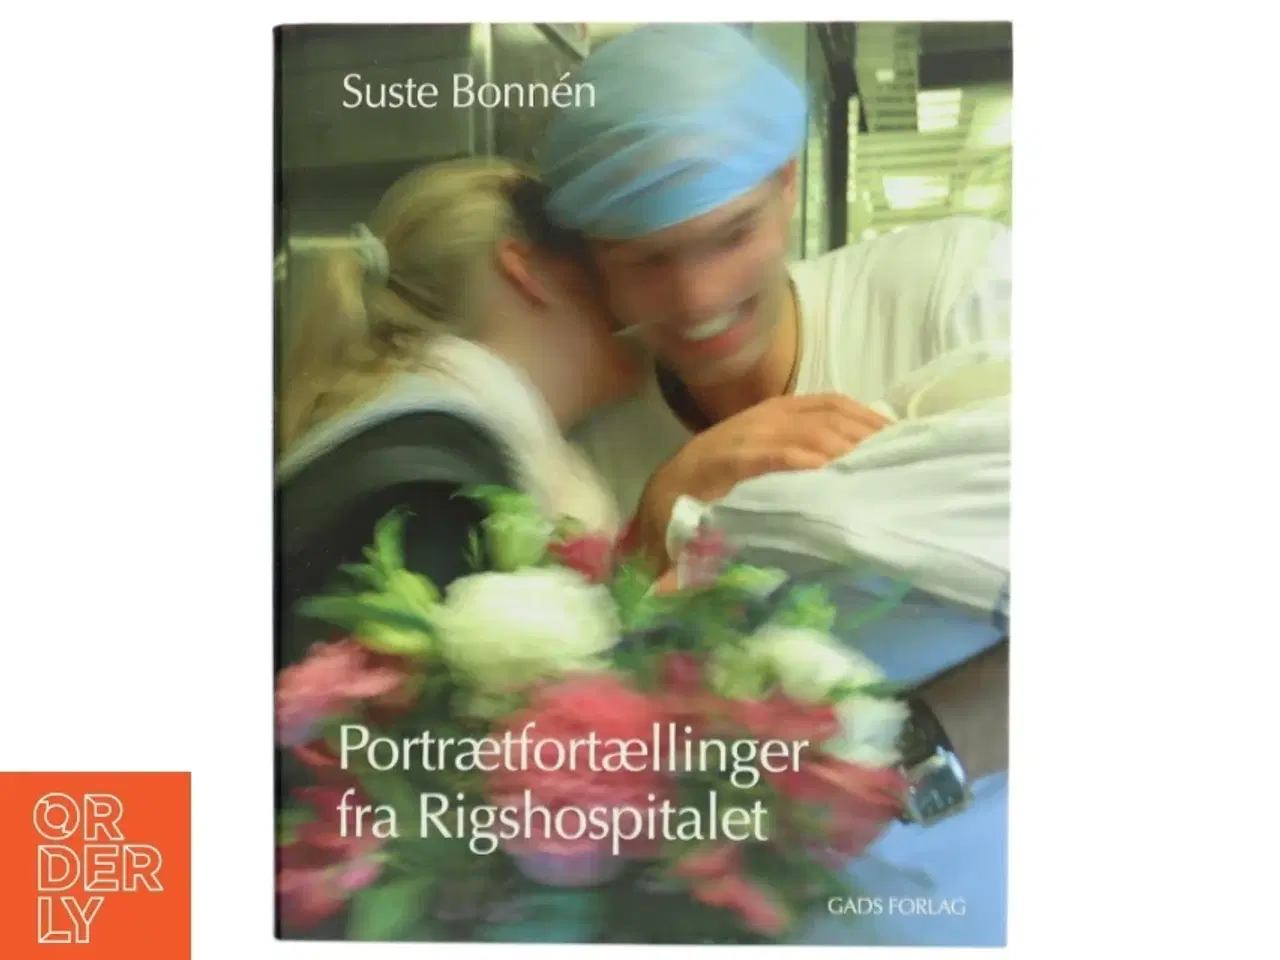 Billede 1 - 'Portrætfortællinger fra Rigshospitalet' af Suste Bonnén (bog)